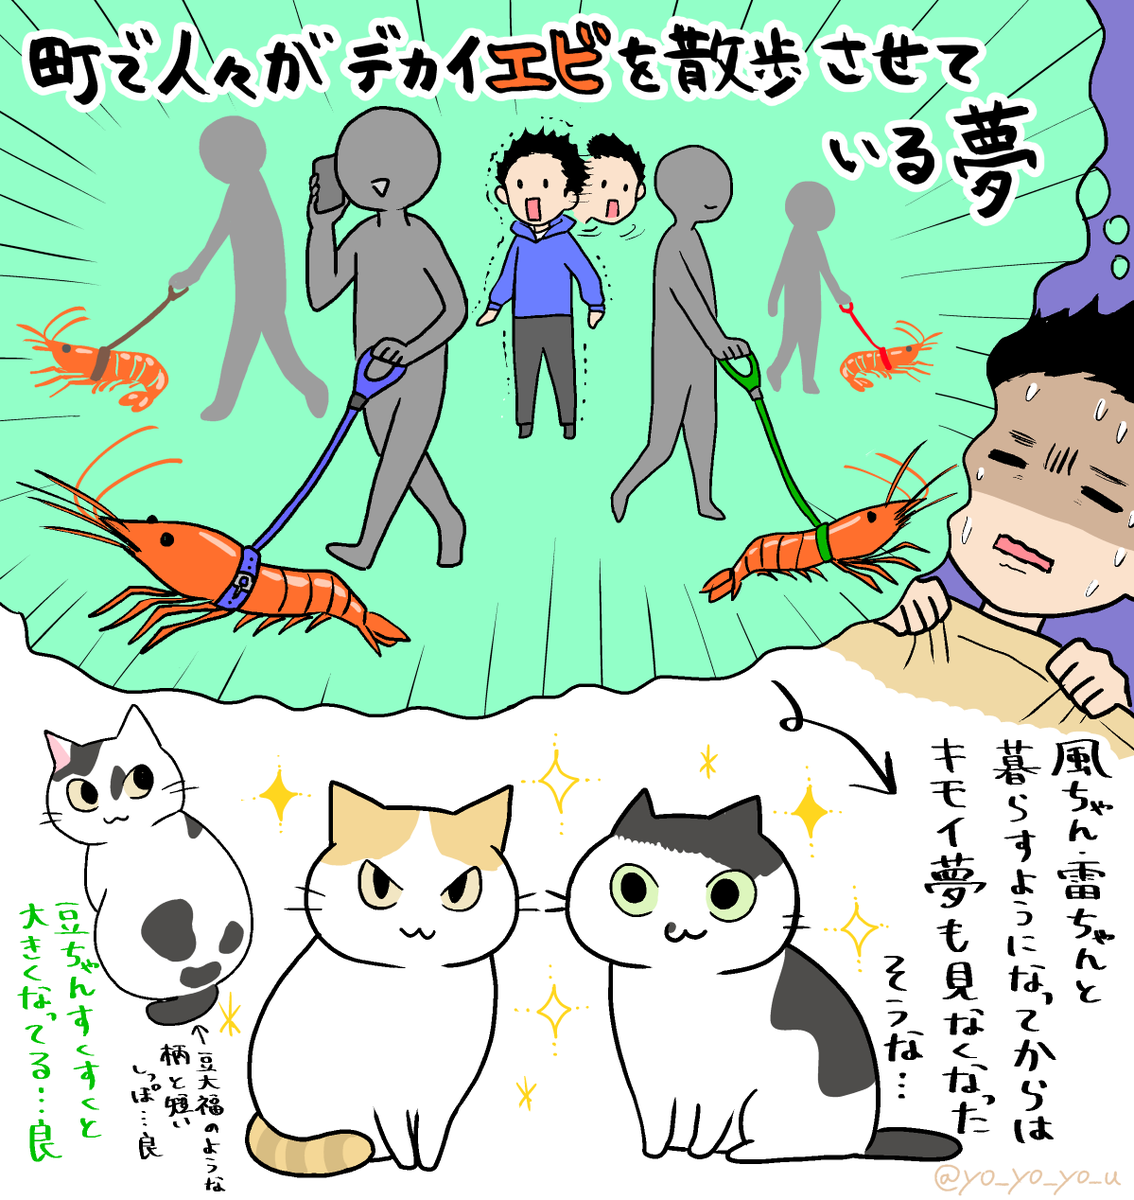 今週のサンシャイン池崎さんの保護猫コーナーは特に見所満載だったのですが、やはり最初の夢の話のインパクトが頭から離れませんでした
#みんなのどうぶつ園 